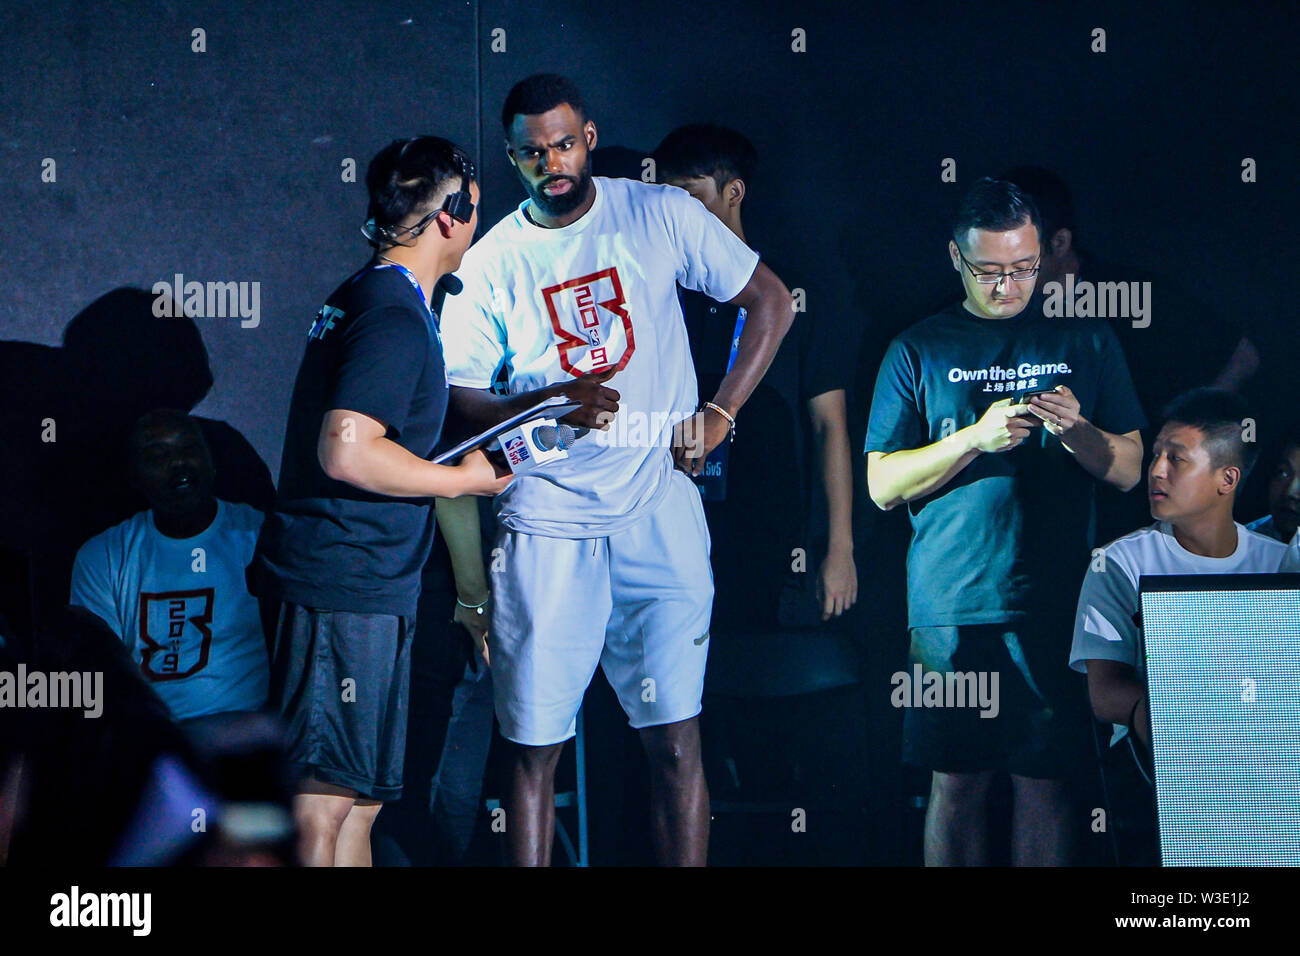 NBA-Star Tim Hardaway jr., am höchsten, von Dallas Mavericks besucht die NBA 5v5 2019 in Chengdu City, im Südwesten Chinas Provinz Sichuan, 14. Juli 2019. Stockfoto